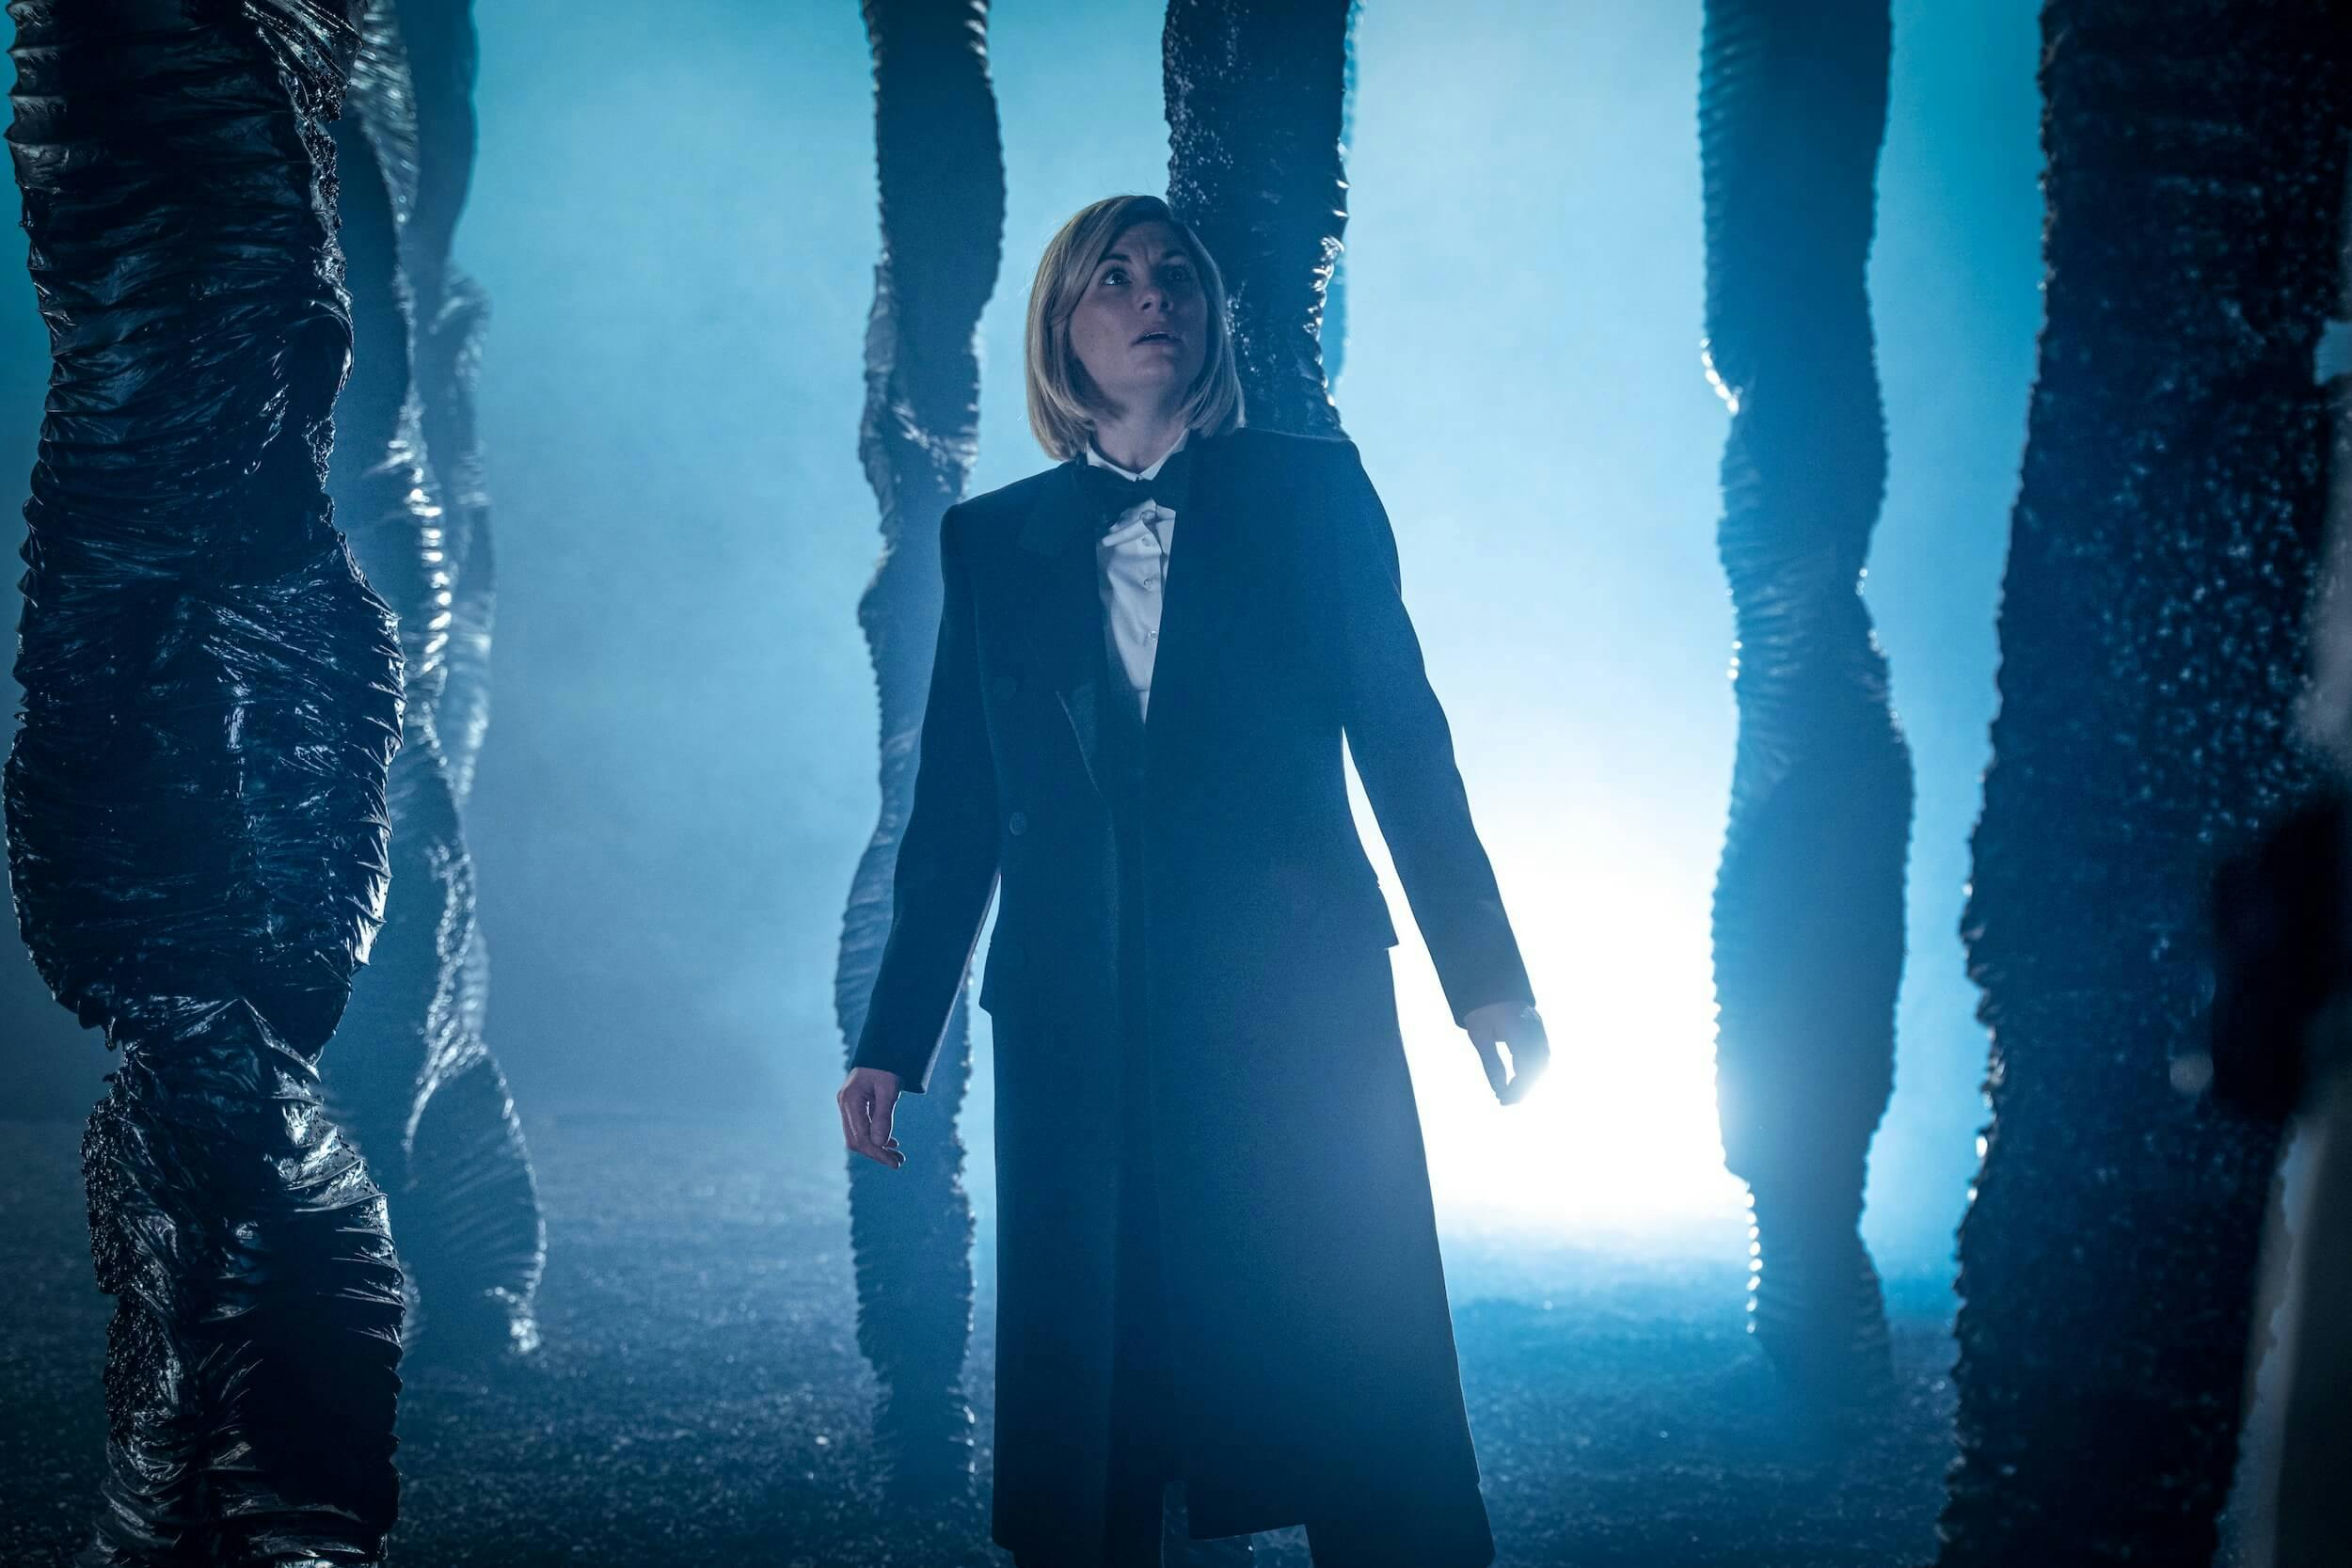 doctor who season 12 episode 1 recap